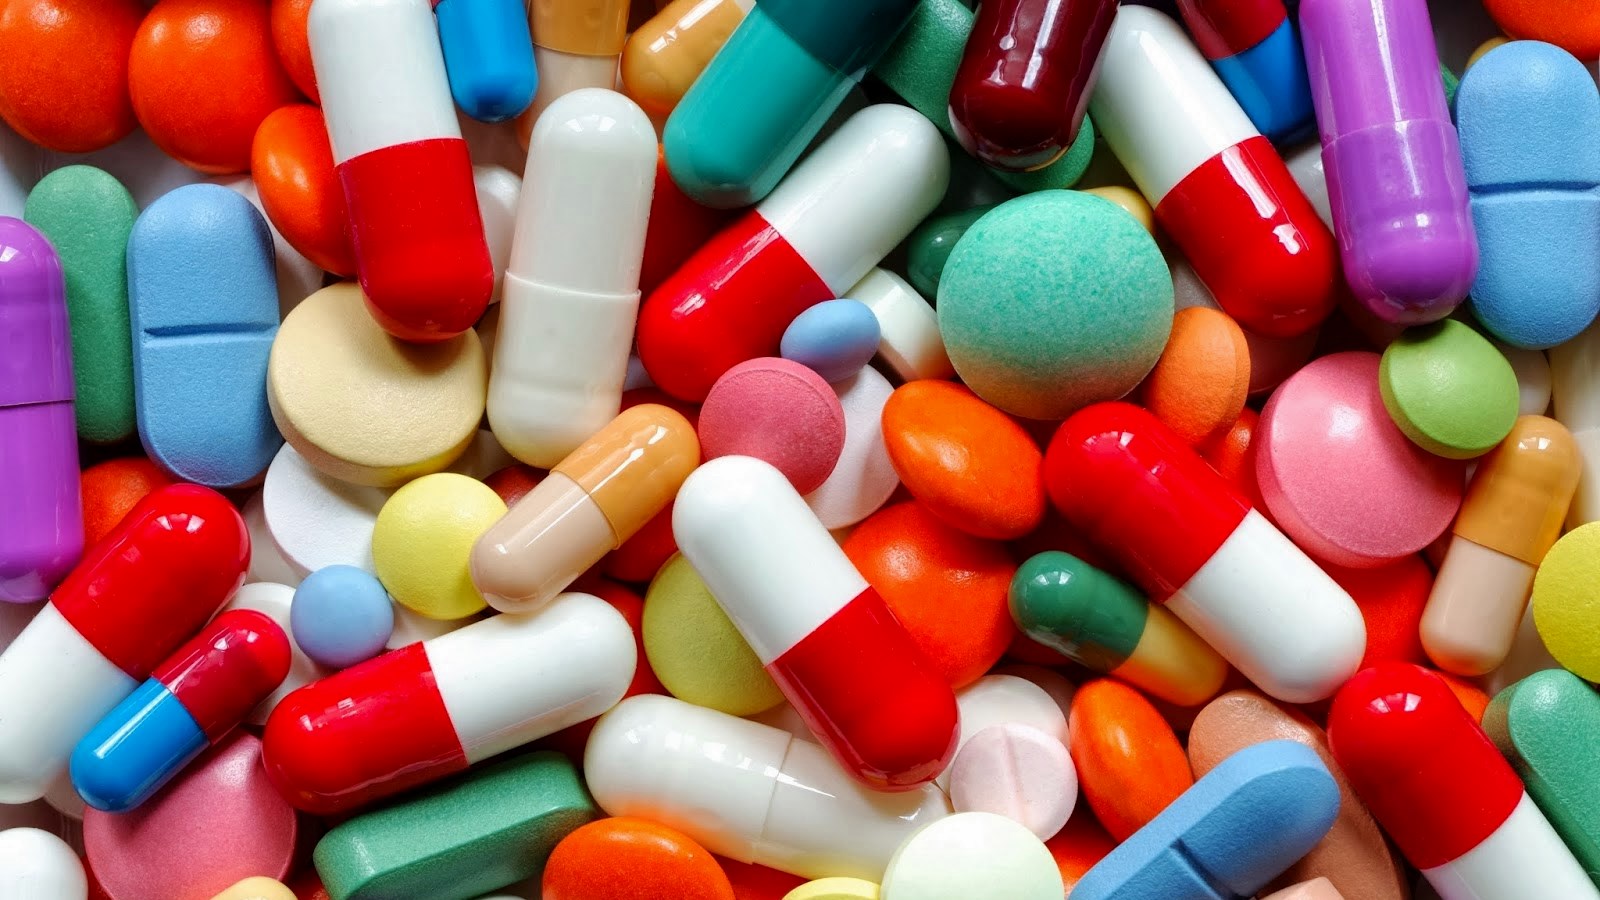 Anvisa inicia teste de 1,8 mil remédios até 2017 | Jornal Tribuna Livre / TriLivre